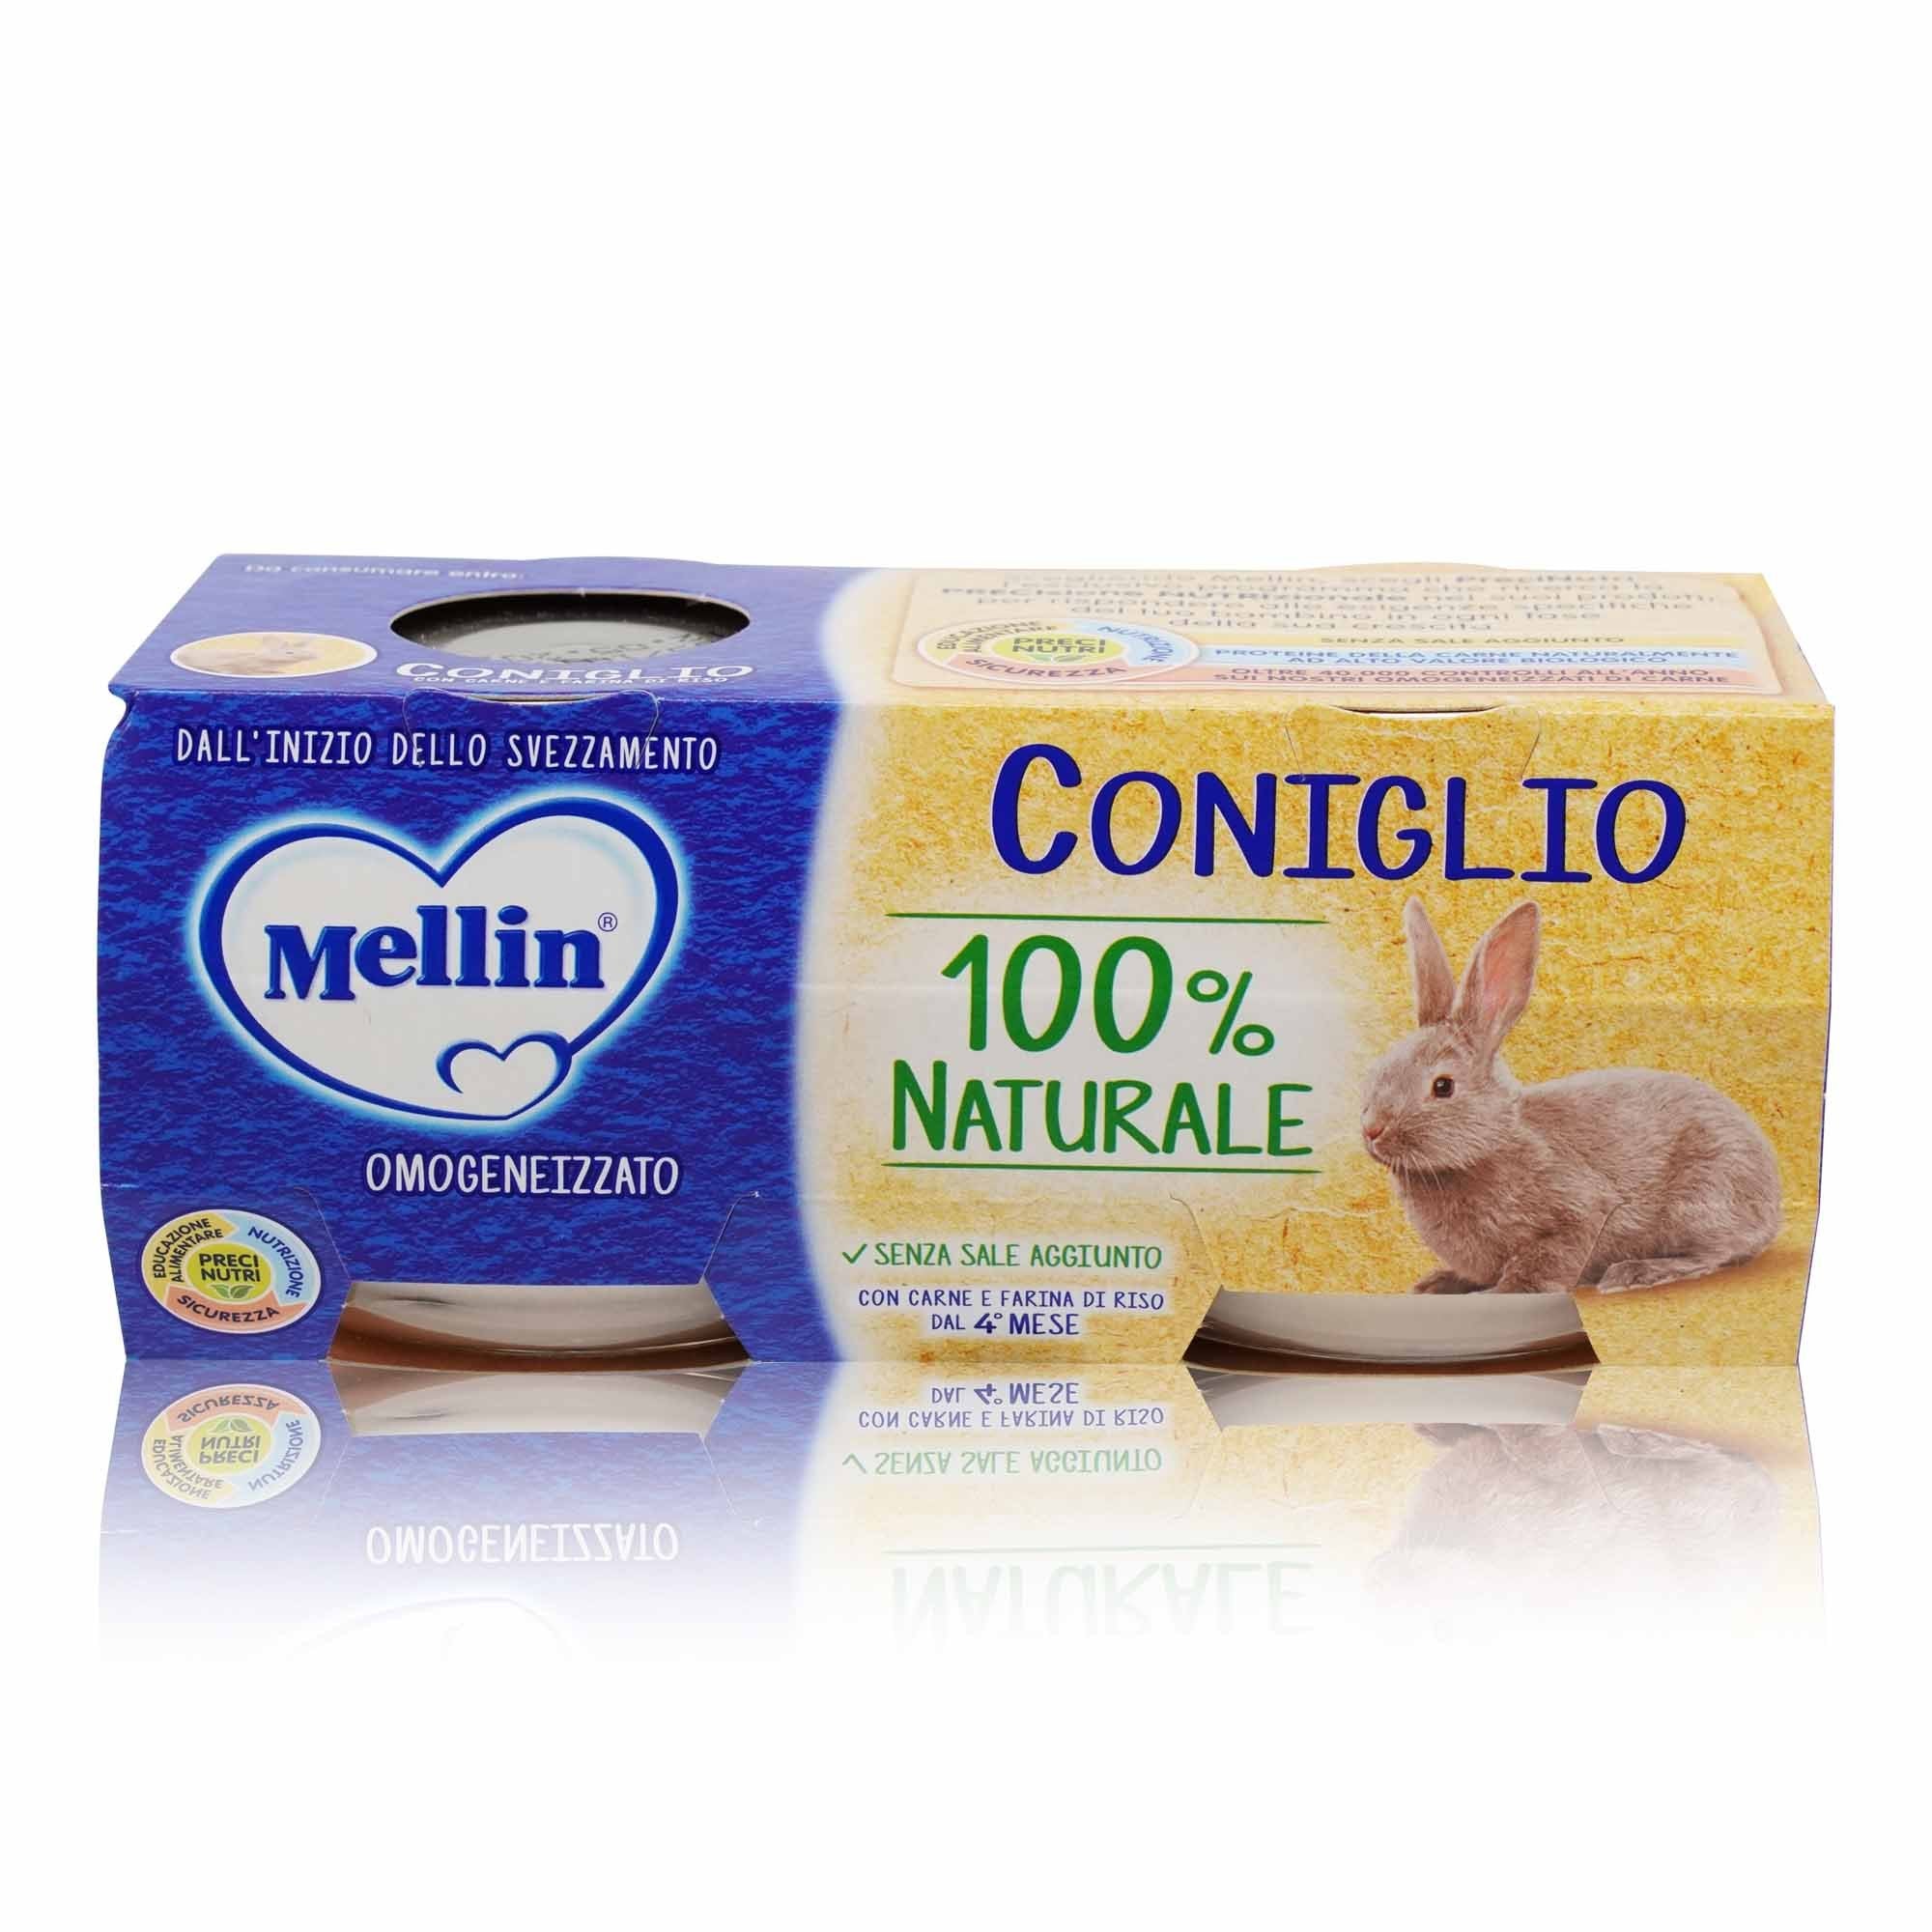 MELLIN Omogeneizzato Coniglio – Fleischgläschen Kaninchen - 0,160kg